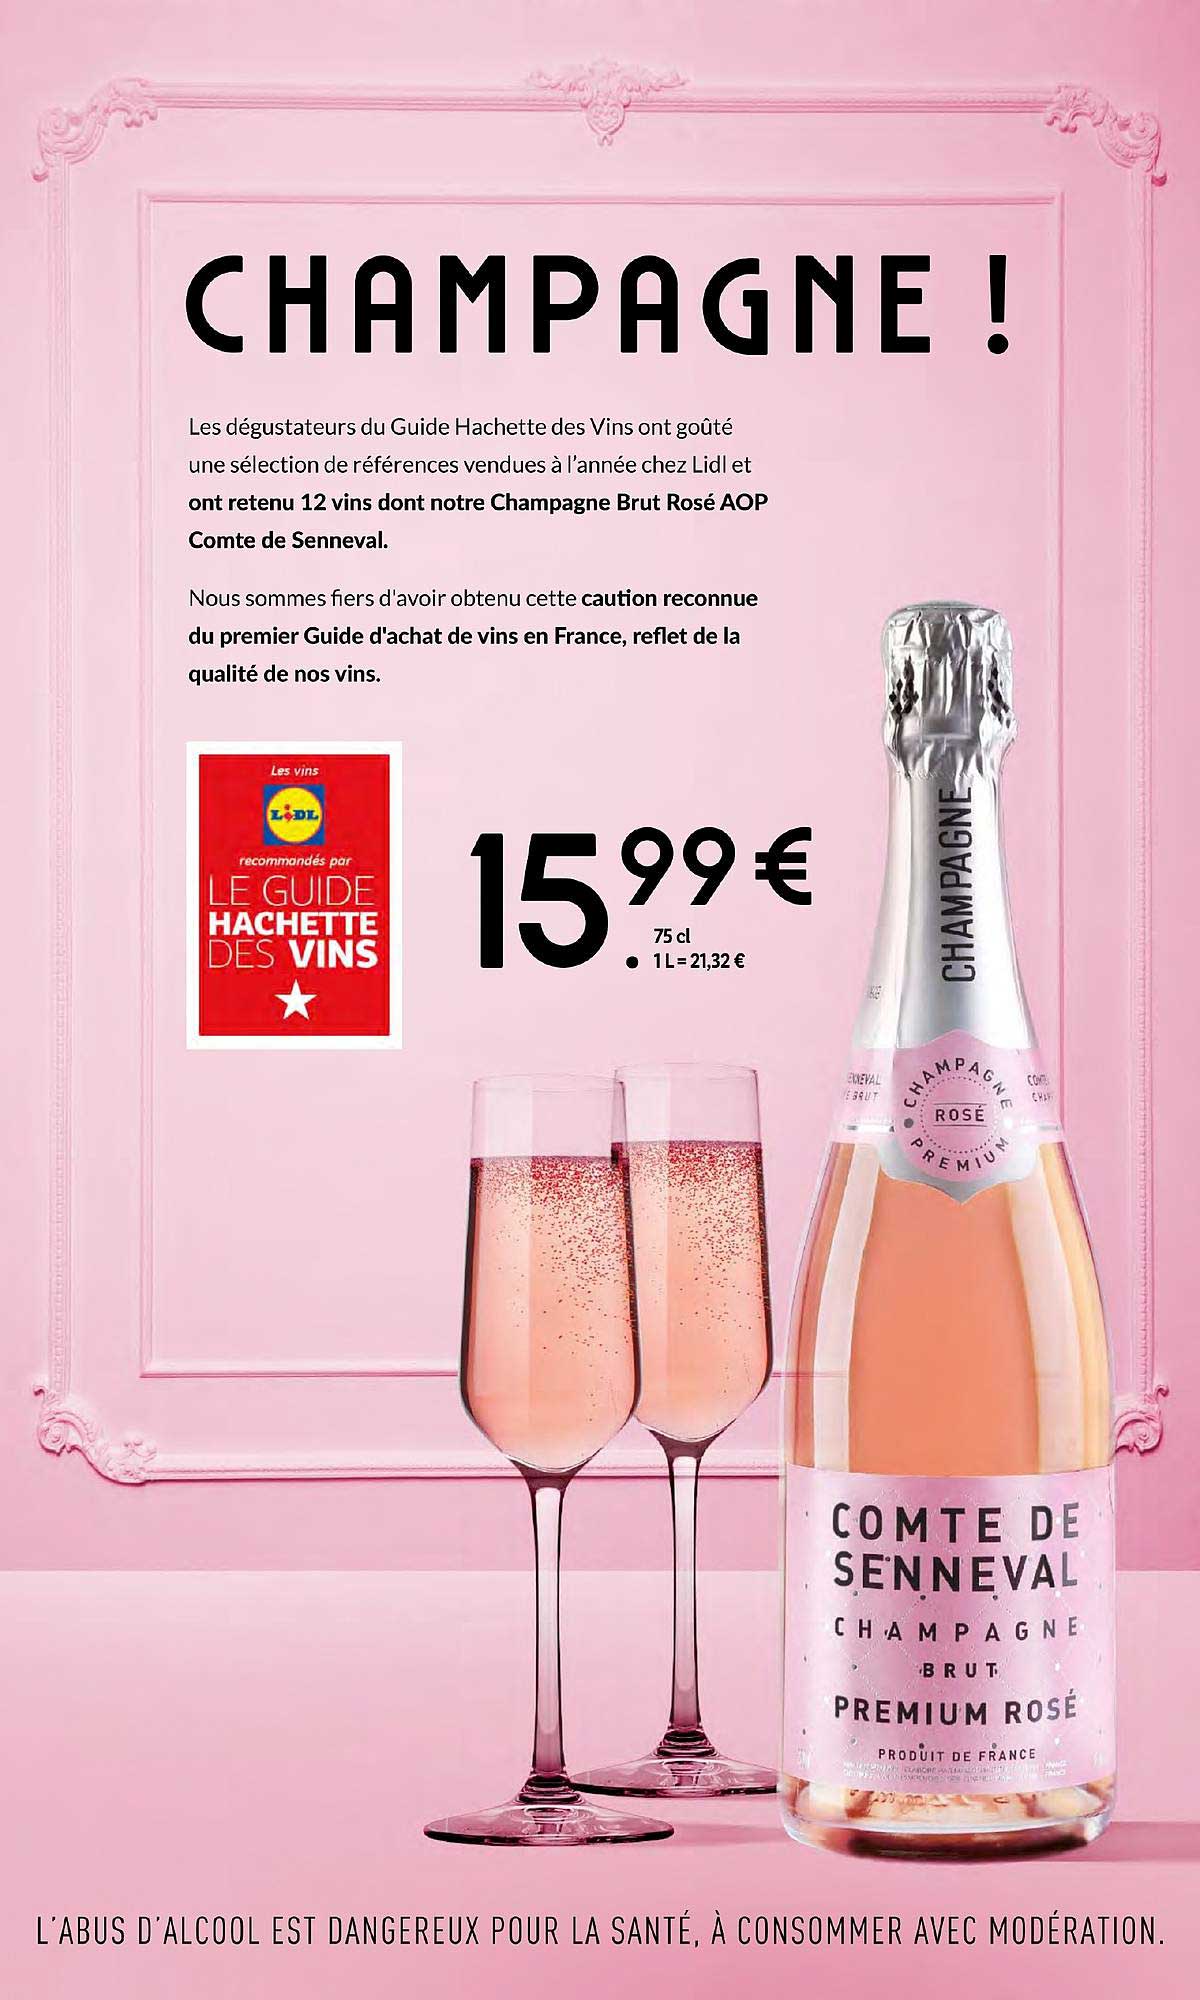 Promo Champagne Comte De Senneval chez Lidl